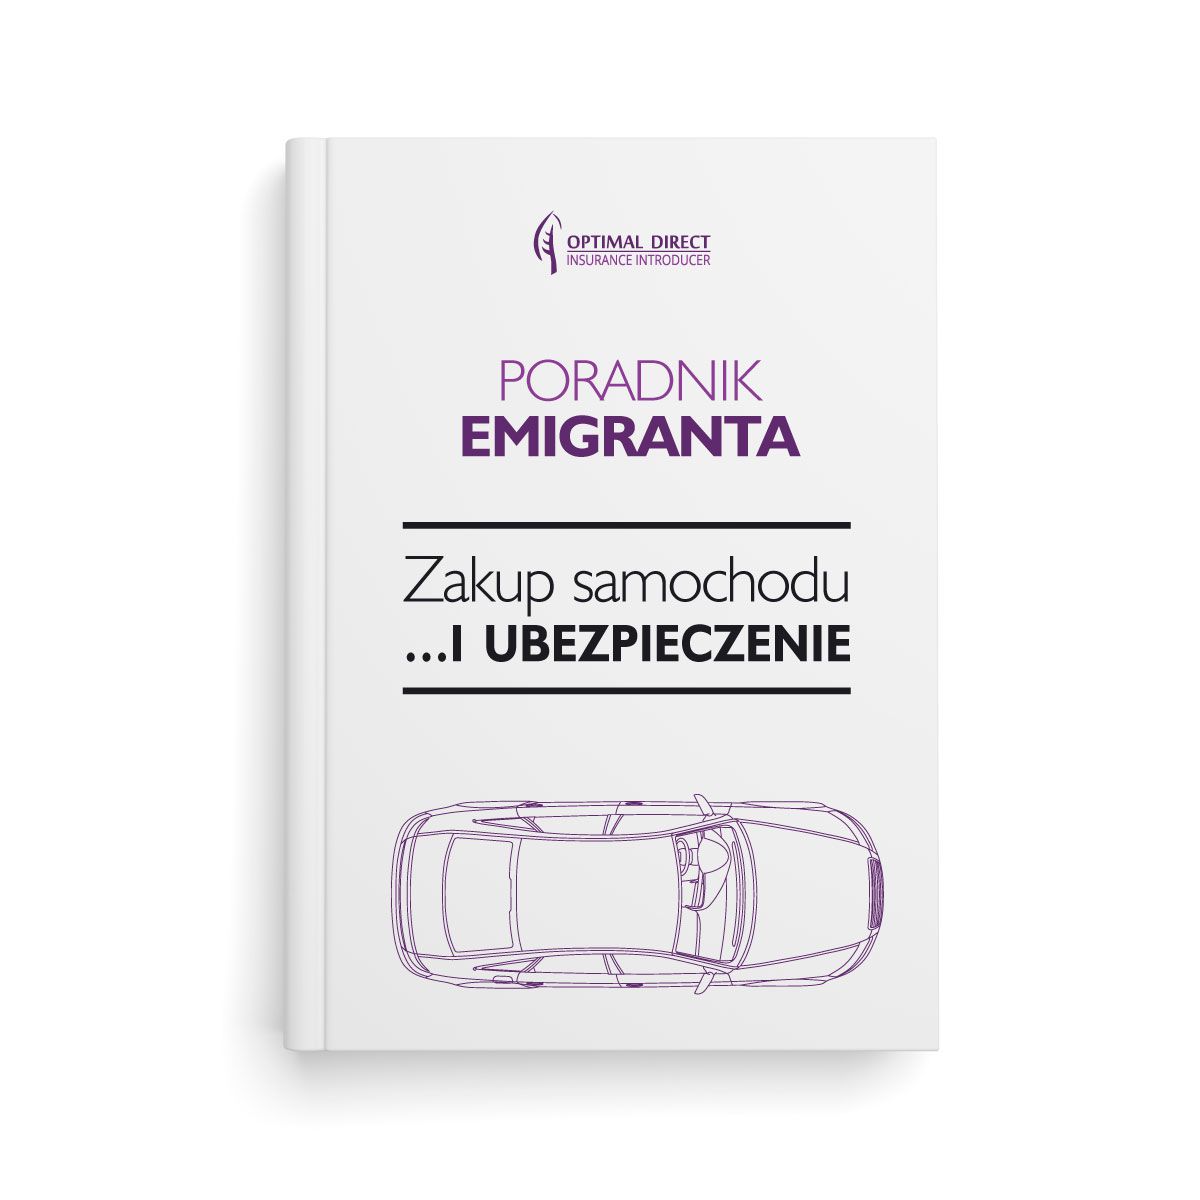 Poradnik Emigranta - Zakup samochodu i ubezpieczenie